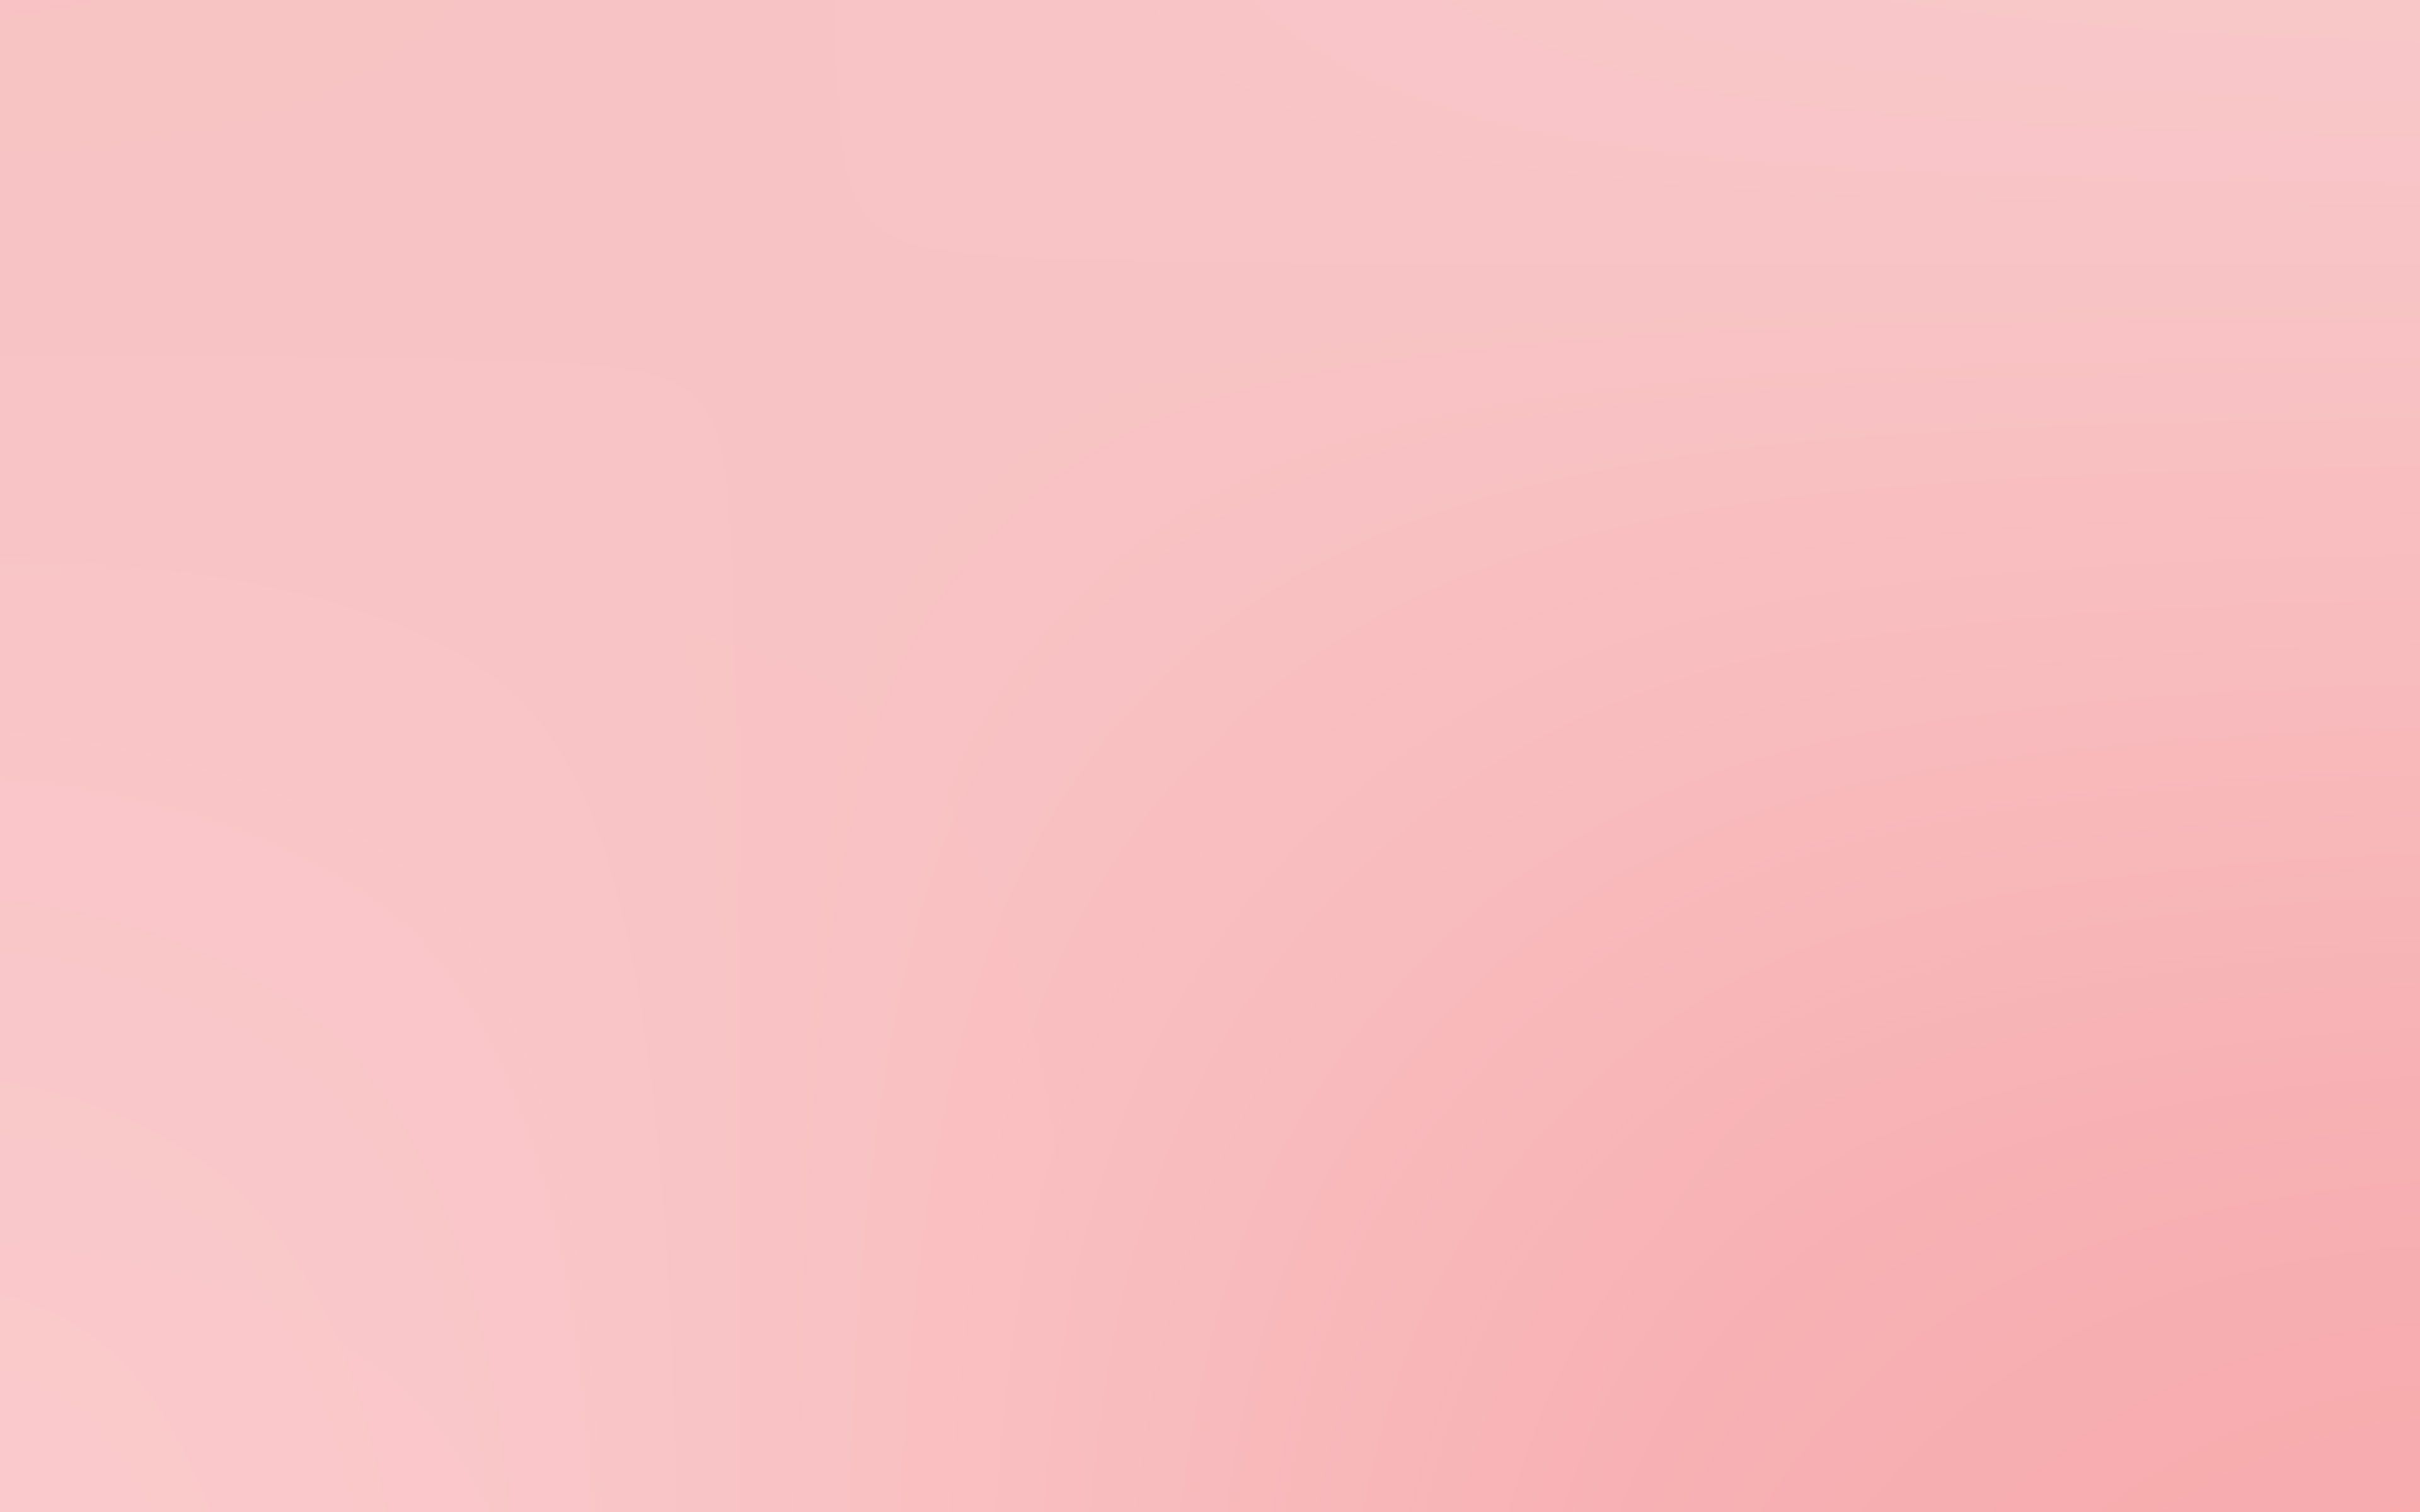 Hình nền máy tính Macbook màu hồng làm nổi bật vẻ đẹp tươi trẻ và nữ tính của bạn. Những cánh hoa hồng quyến rũ và những nét đậm nét nhạt trên hình ảnh khiến bạn xao xuyến và phấn khích. Bức tranh sẽ làm bạn cảm thấy thoải mái và xua tan đi sự căng thẳng trong công việc.